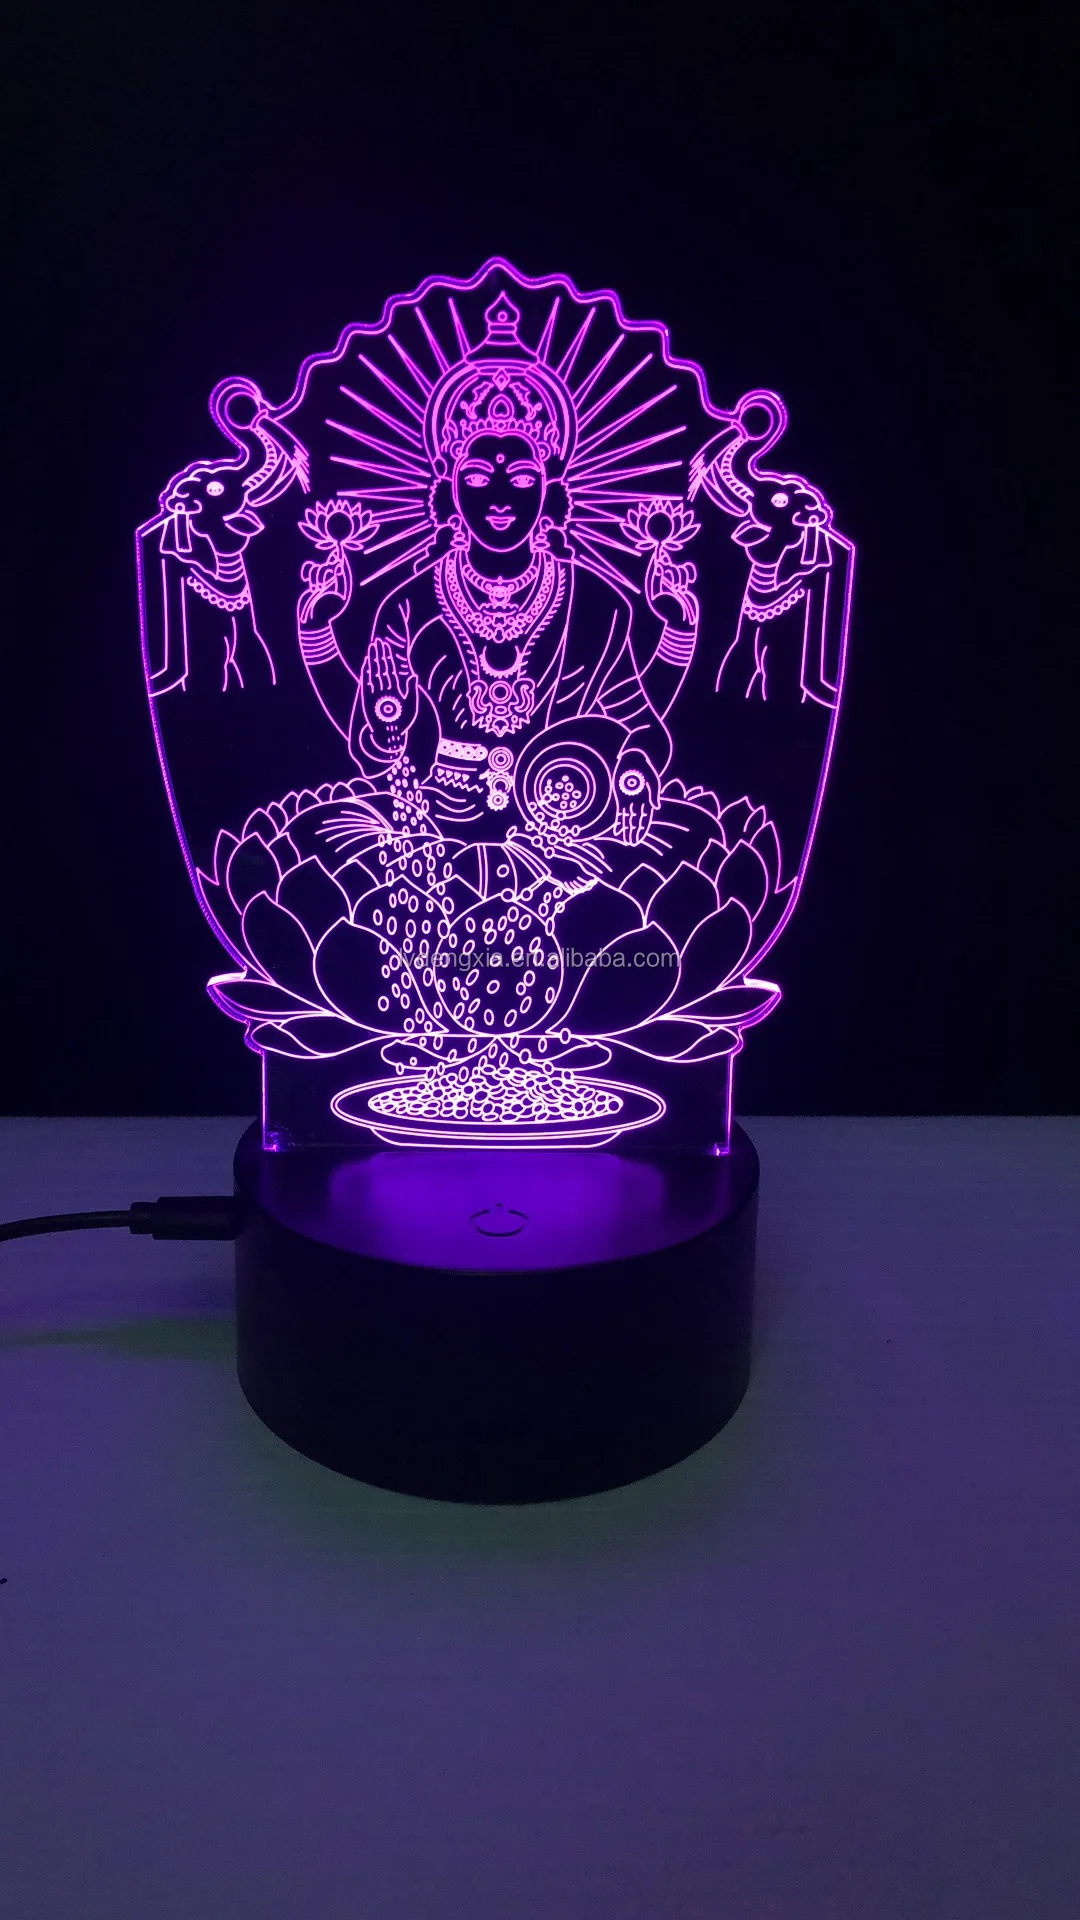 3D Buddha Night Light Lamp 7 Cambiamento di Colore LED USB Touch Table Gift Kids Toys Decor Decorazioni di Natale Regalo di San Valentino Regalo di Compleanno 